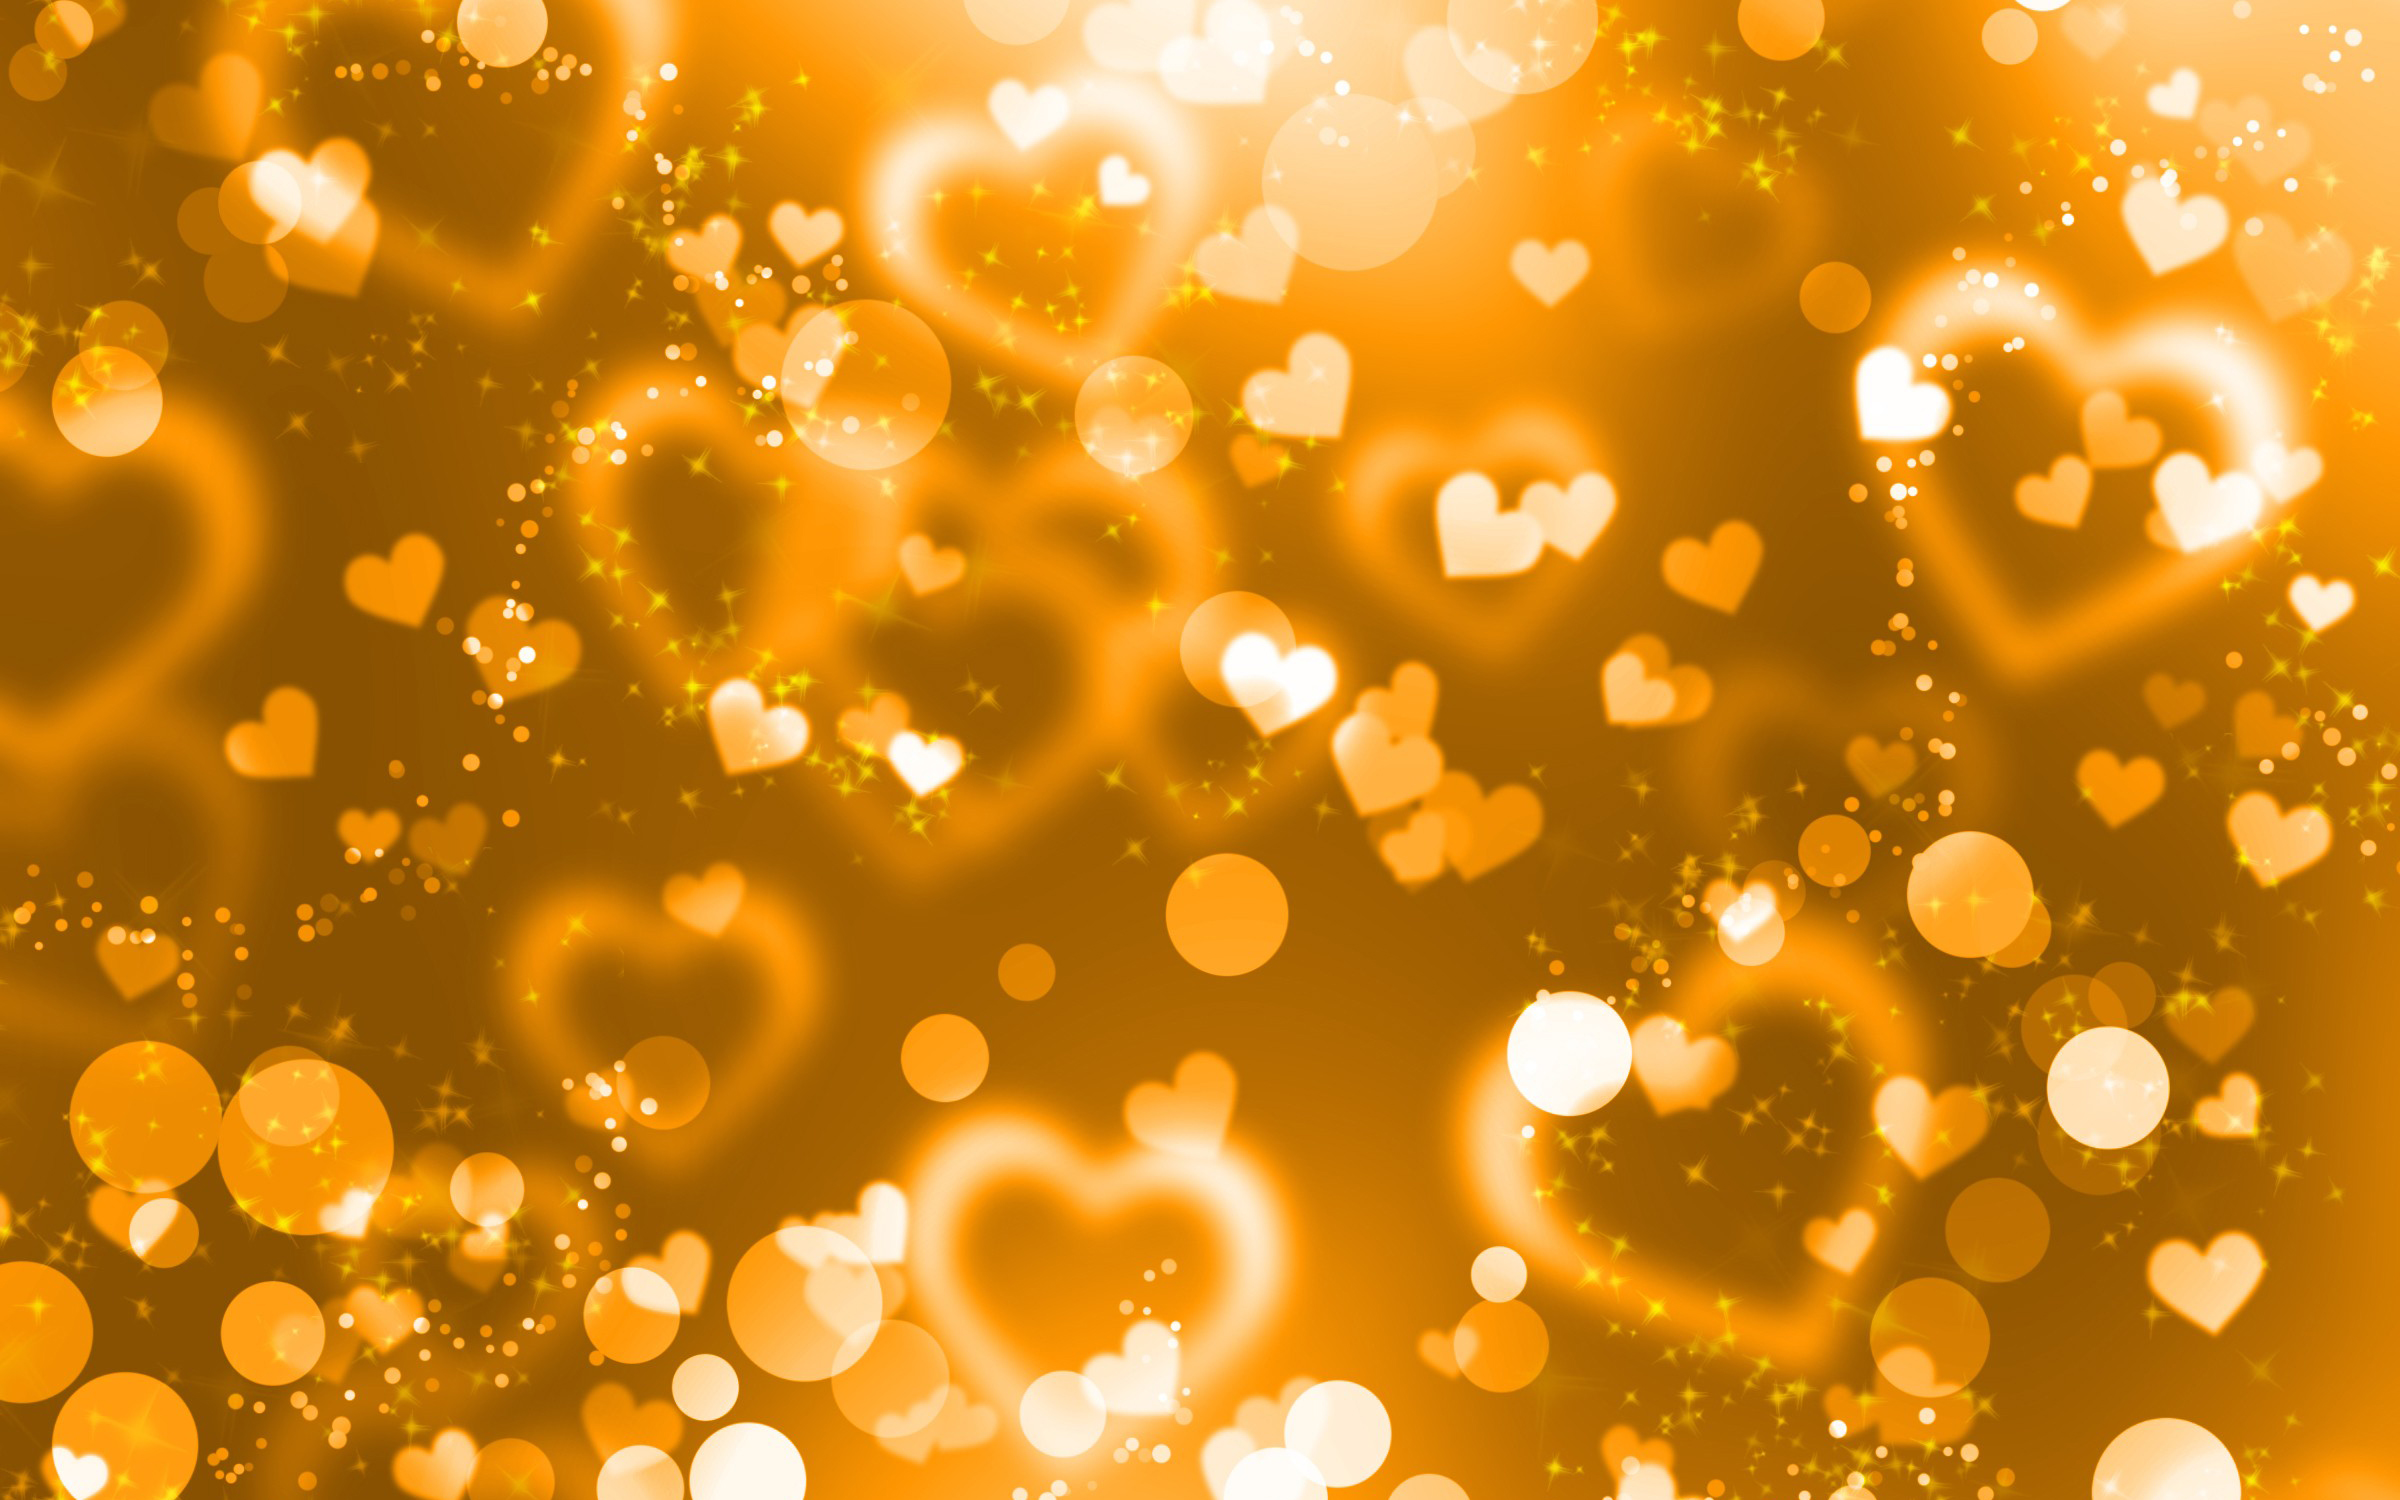 amour fond d'écran hd pleine taille,orange,jaune,lumière,or,l'eau